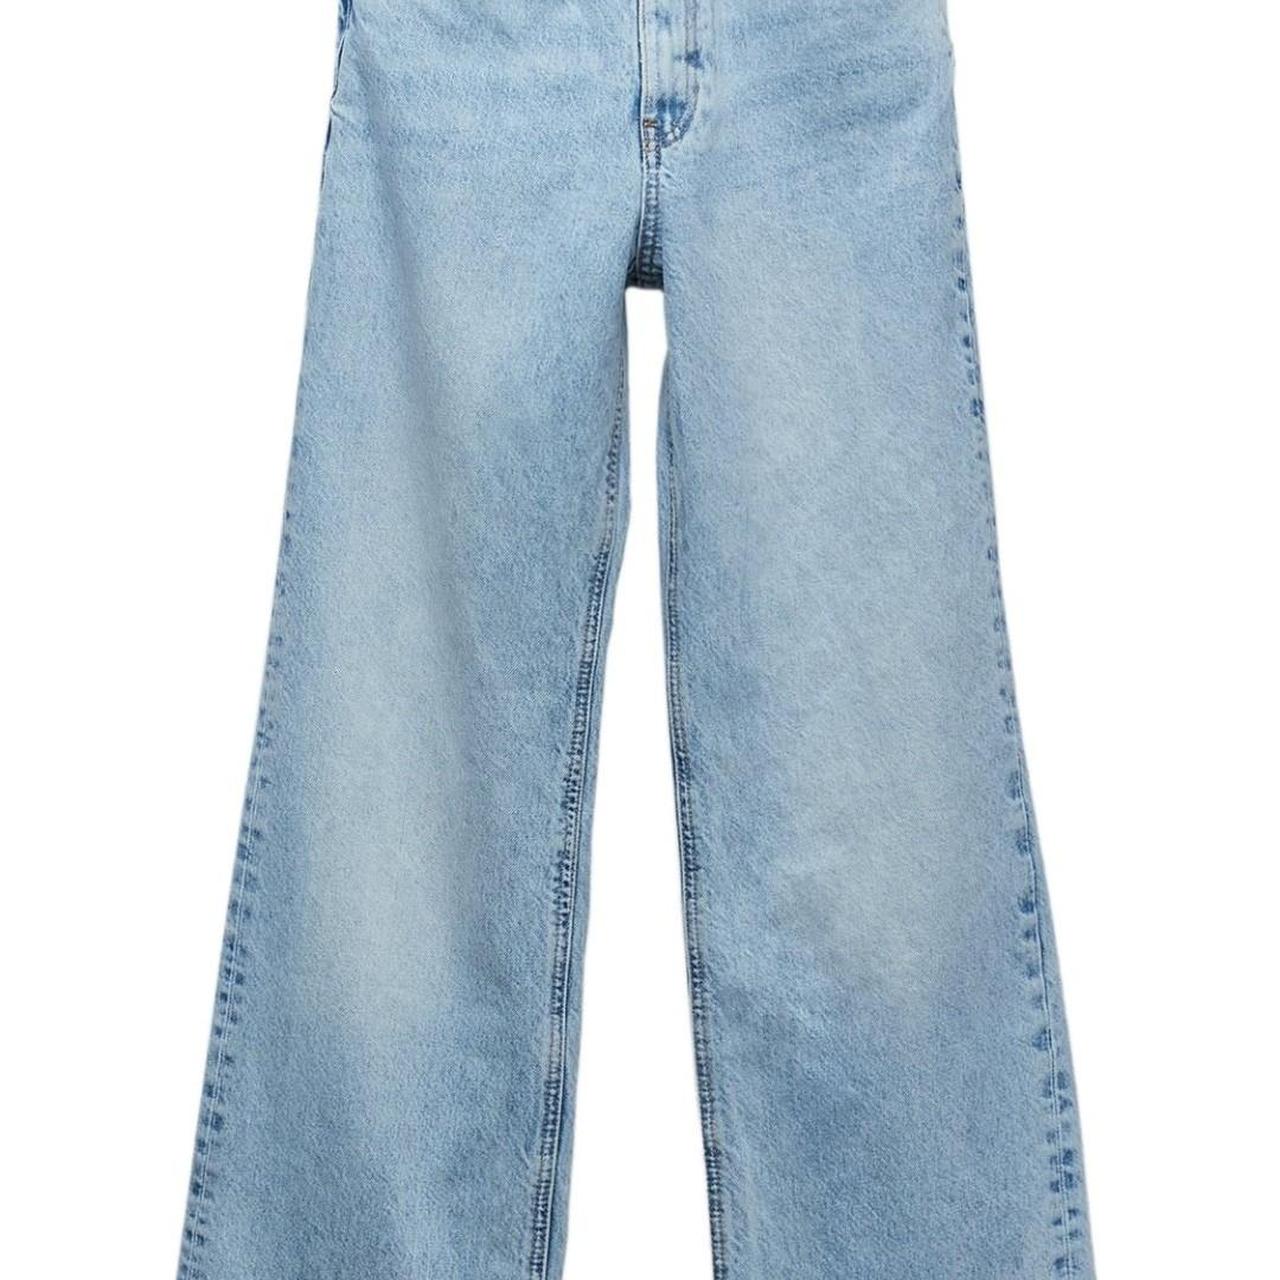 Zara wide leg jeans Raw hem, worn twice Size 8 - Depop